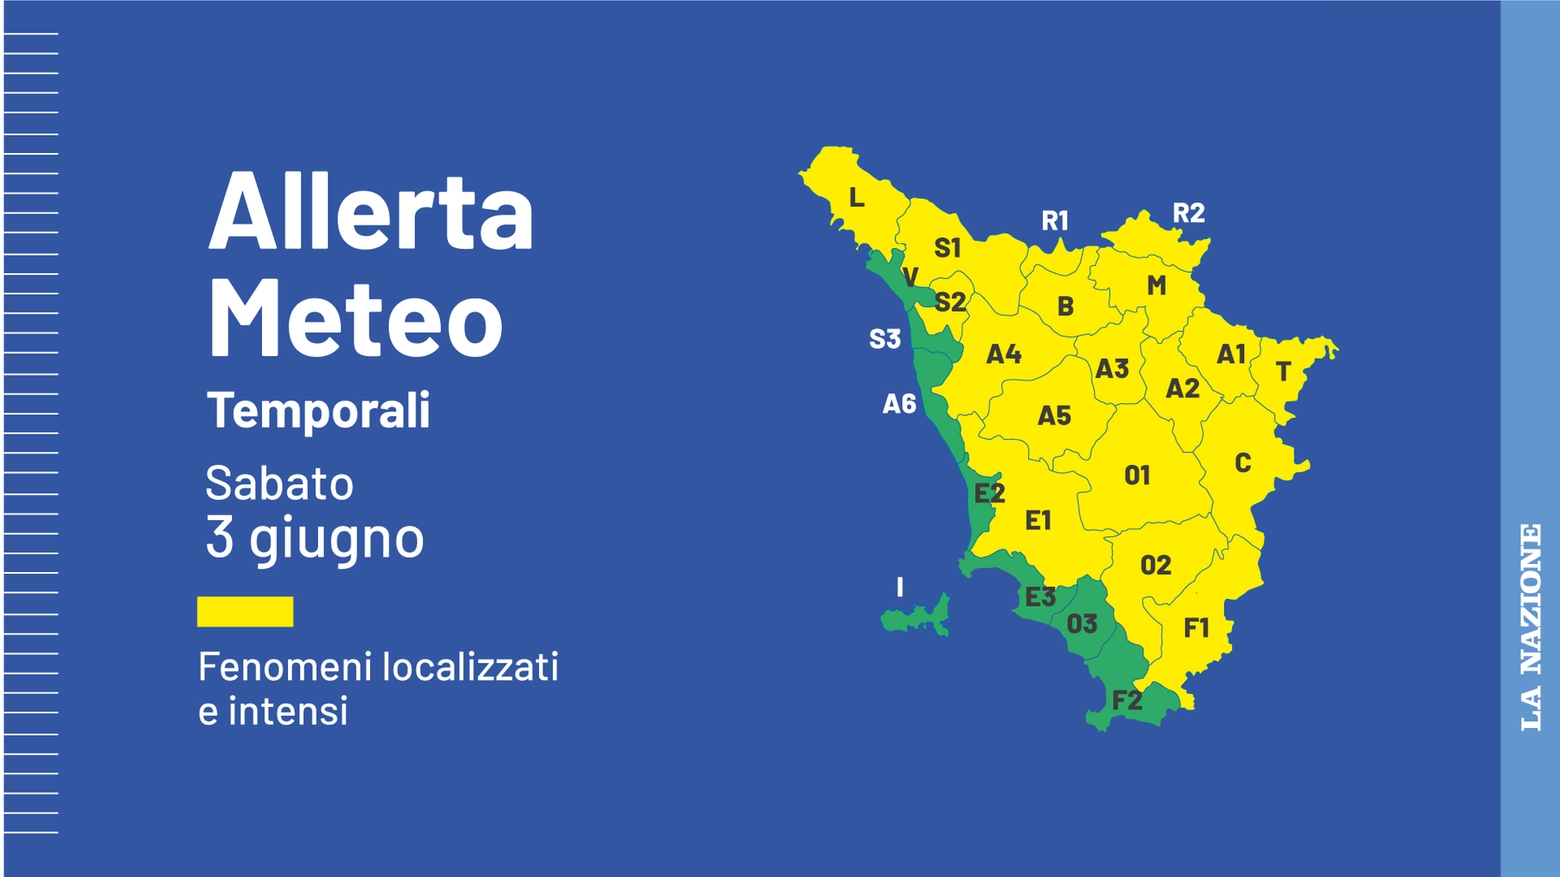 <p>Maltempo, temporali forti: allerta meteo gialla in Toscana. Le zone a rischio / <a href="https://www.lanazione.it/meteo/previsioni-caldo-cm6sd8l7">Previsioni</a> /<a href="https://www.lanazione.it/firenze/temporali-e-fulmini-ecco-le-regole-doro-per-evitare-incidenti-03eb5c0d"> Fulmini, ecco cosa non fare</a> / <a href="https://www.lanazione.it/firenze/cronaca/maltempo-tuoni-temporale-jx1zosnr">Pioggia e grandine a Firenze</a></p>